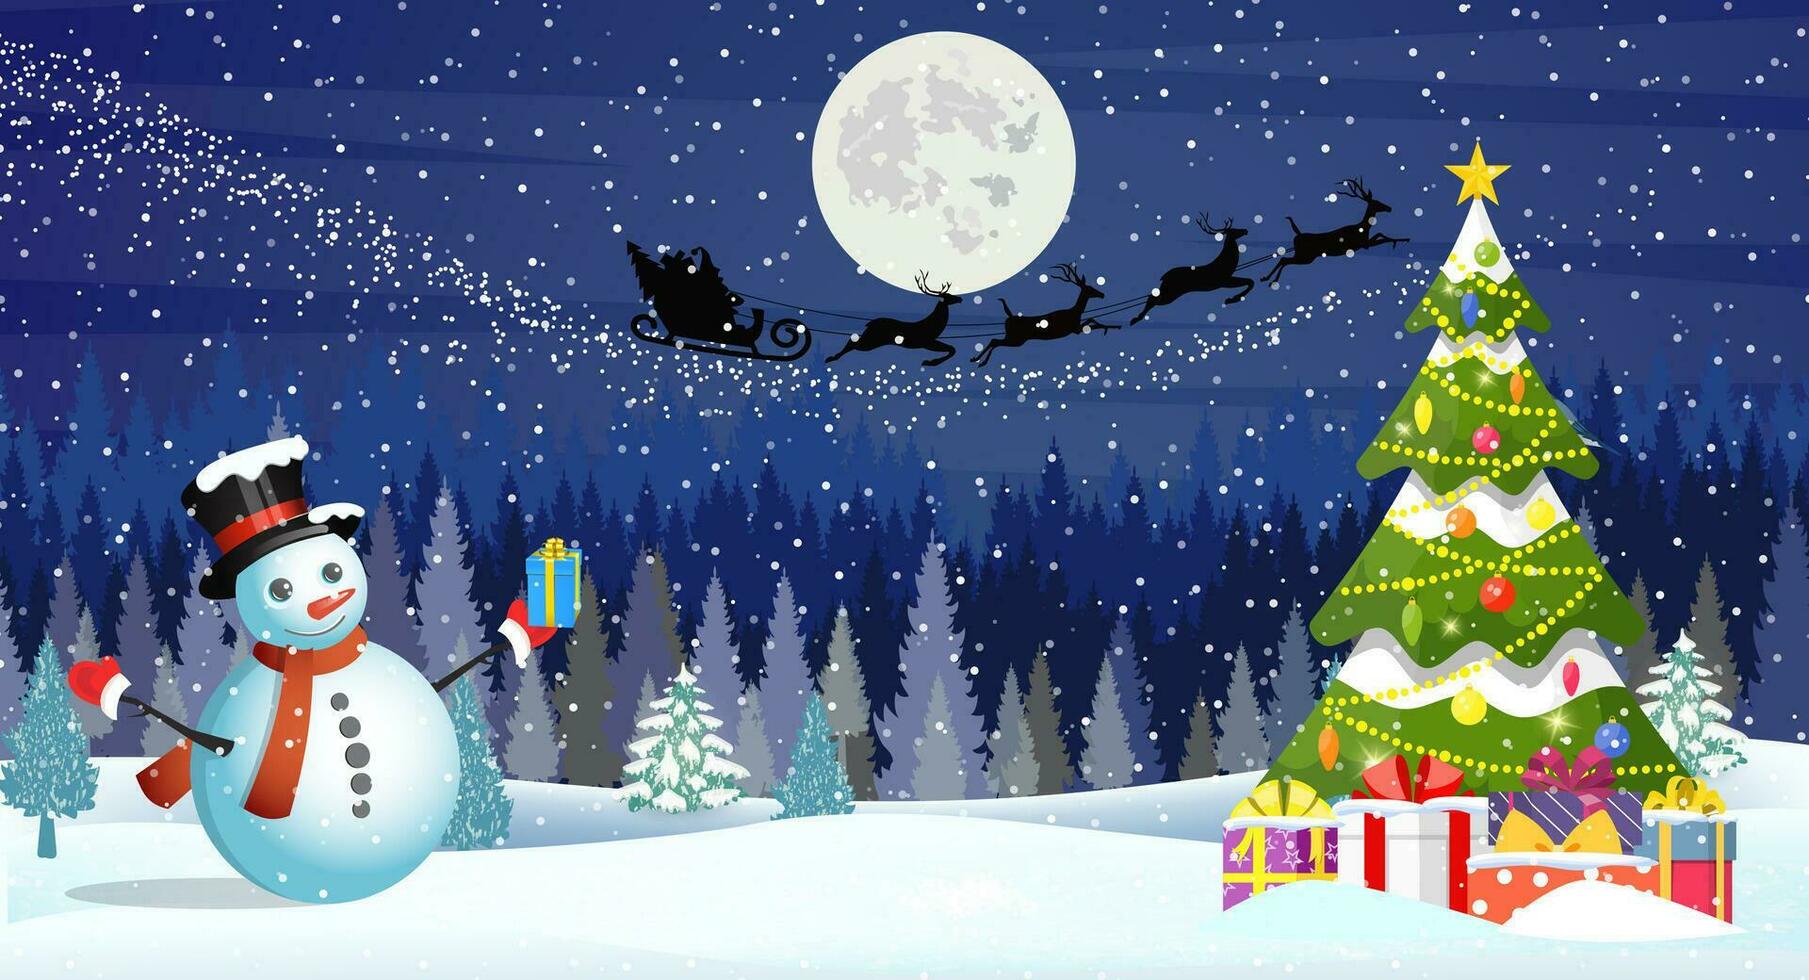 Weihnachten Landschaft beim Nacht. Weihnachten Baum und Schneemann. Hintergrund mit Mond und das Silhouette von Santa claus fliegend auf ein Schlitten. Konzept zum Gruß oder Post- Karte vektor